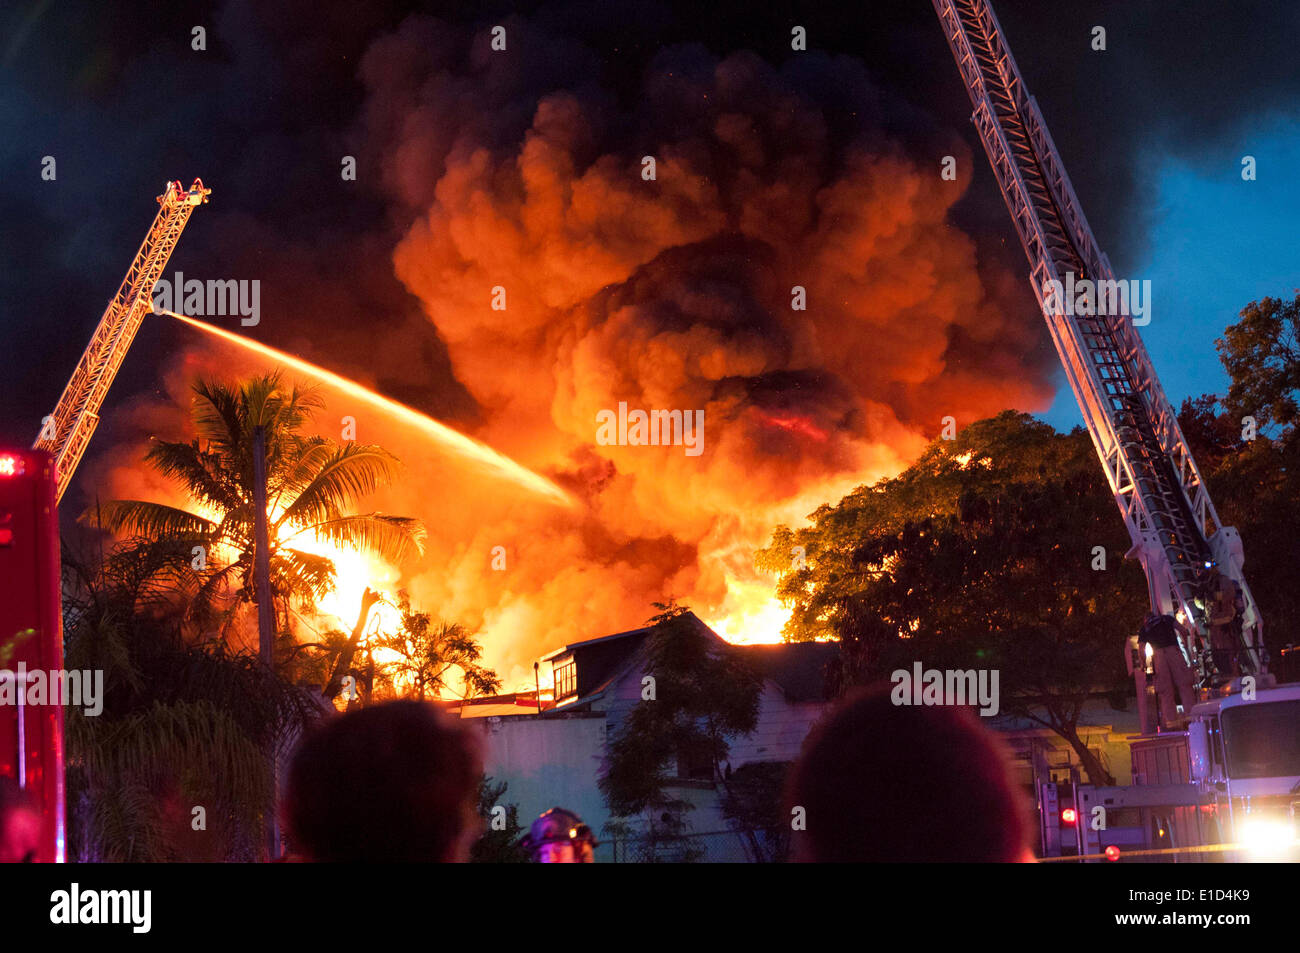 30 mai 2014 - Miami, Floride, États-Unis - Les pompiers bataille un incendie à la maison sur le SW 14 Terrasse. (Crédit Image : © Maria Izaurralde/ZUMA Press) Banque D'Images